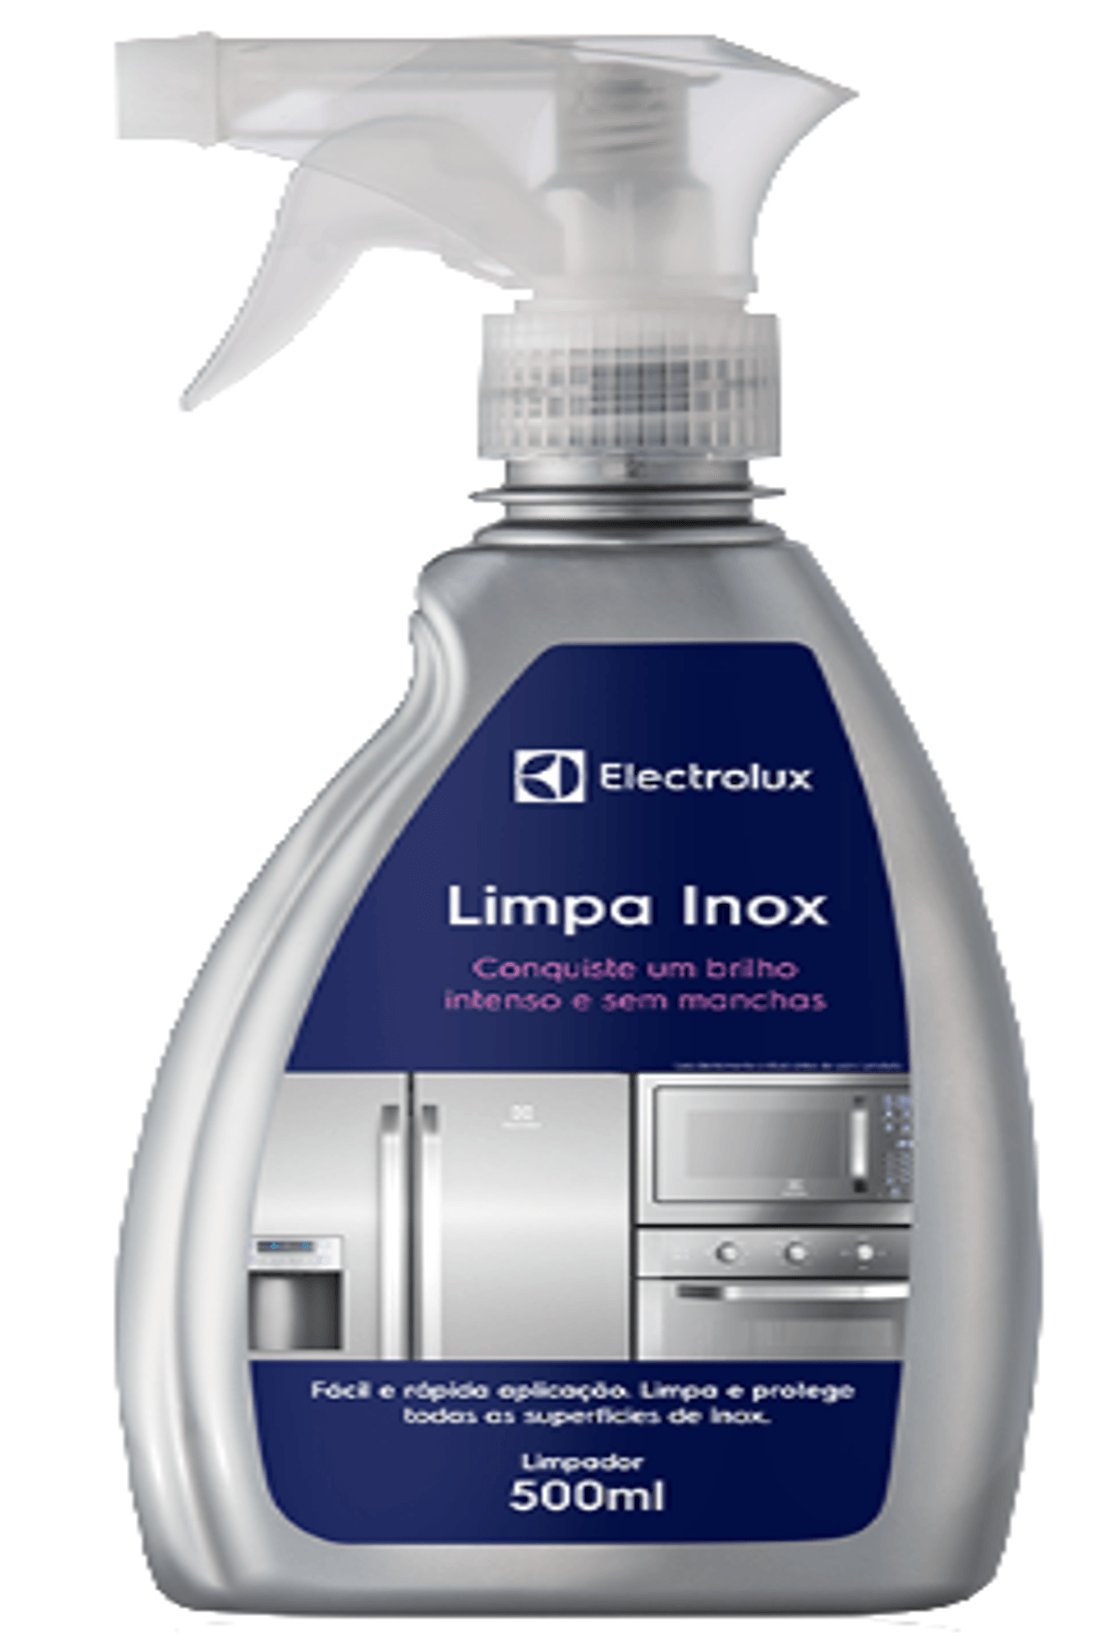 LIMPIADOR ACERO INOXIDABLE ENVASE 500 ml 